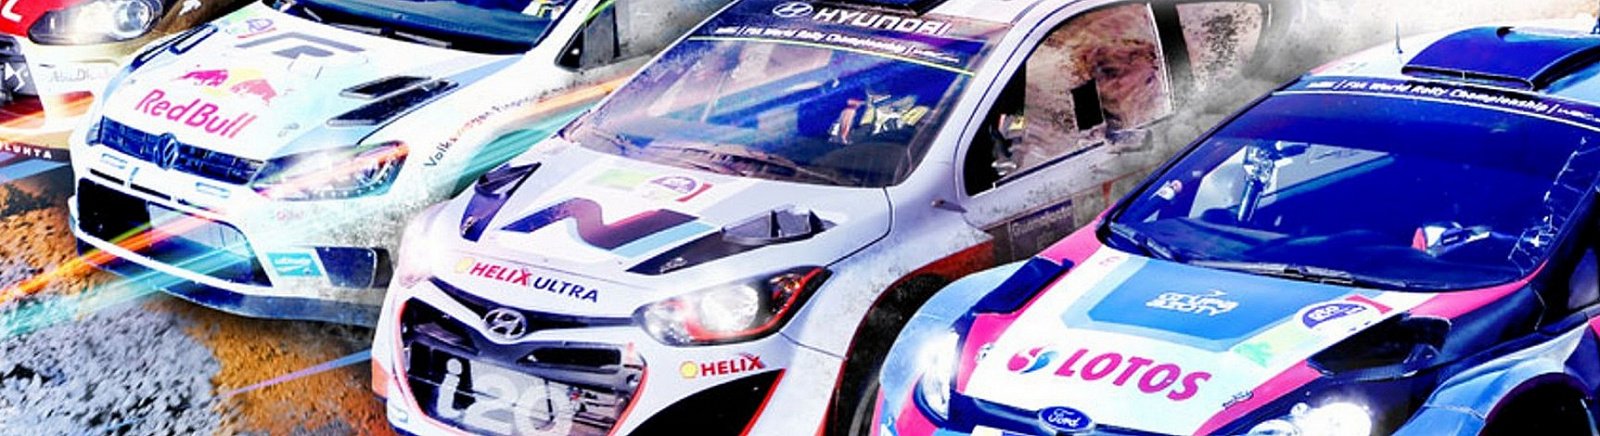 Дата выхода WRC FIA World Rally Championship  на PC, PS3 и Xbox 360 в России и во всем мире